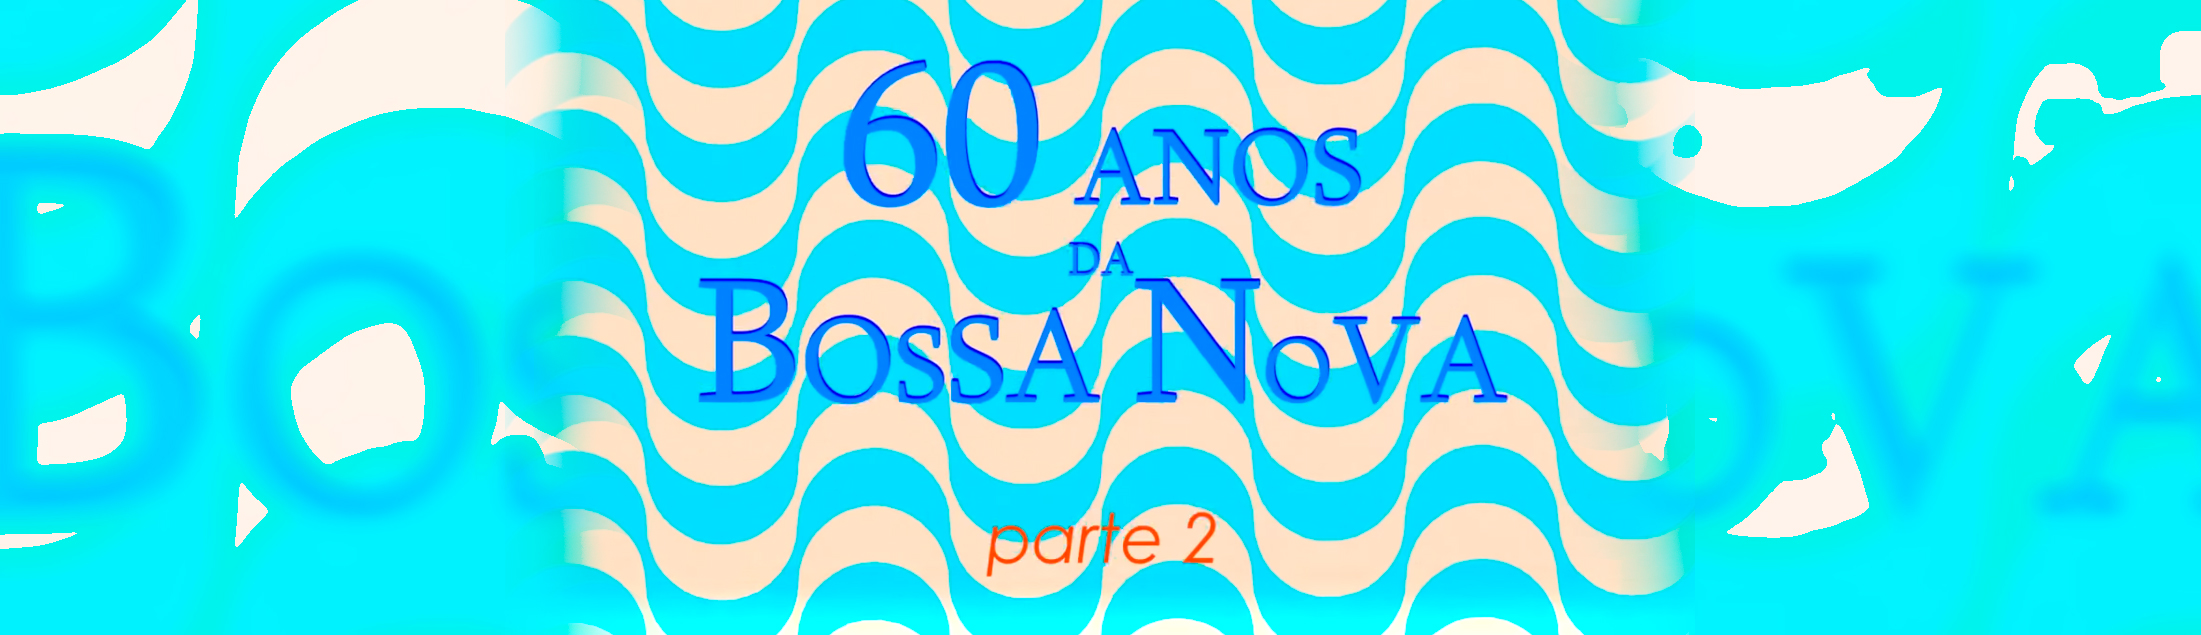 60 anos de Bossa Nova - Faour entrevista Menescal, Carlos Lyra e Marcos Valle